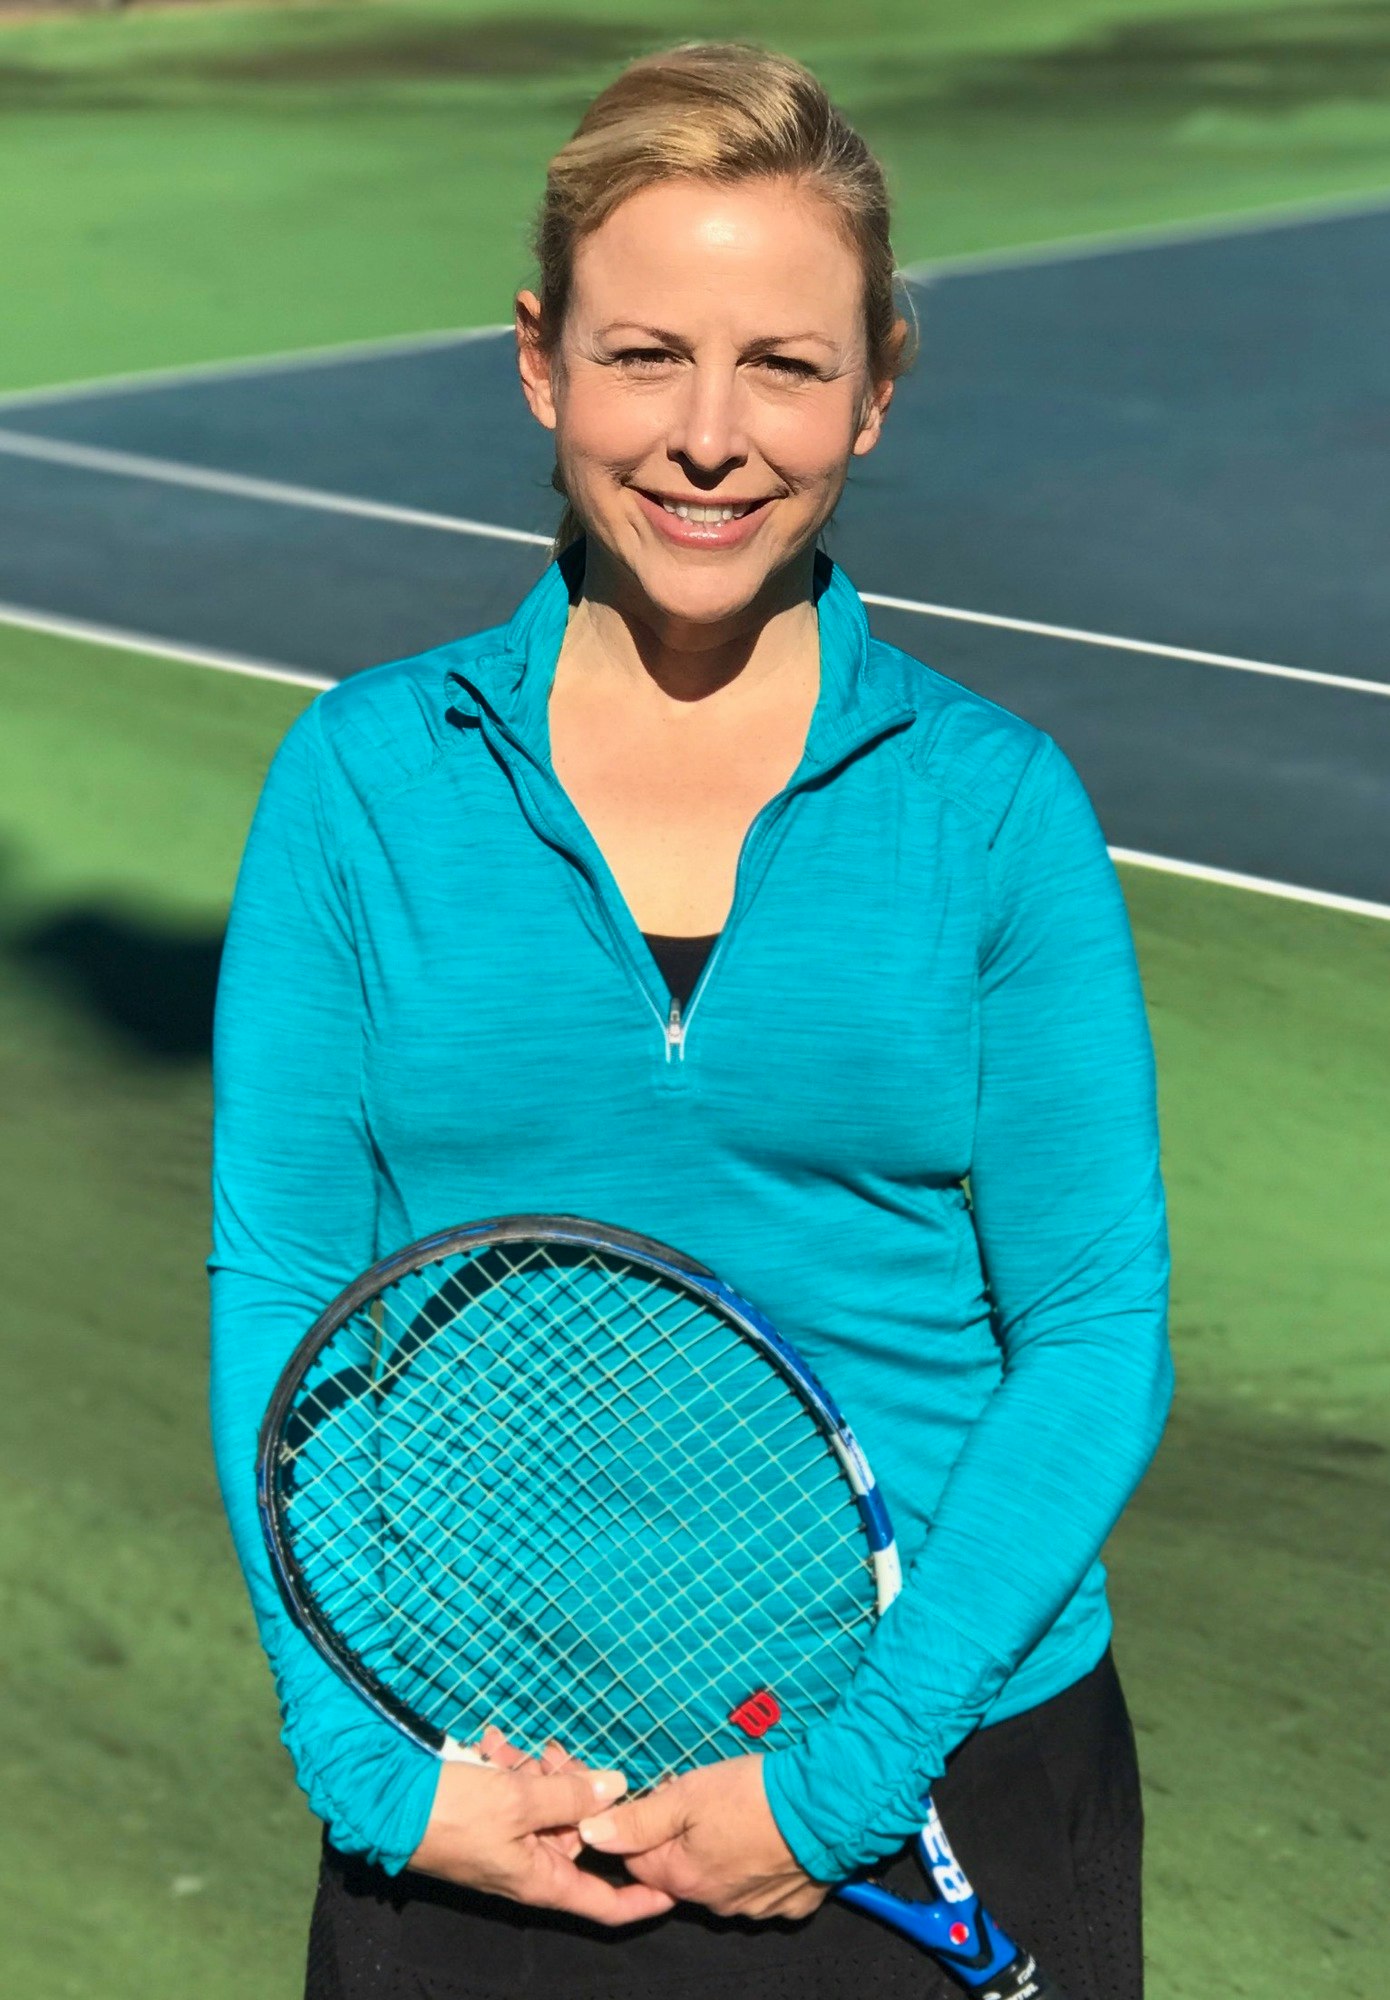 Melanie M. teaches tennis lessons in Nashville, TN